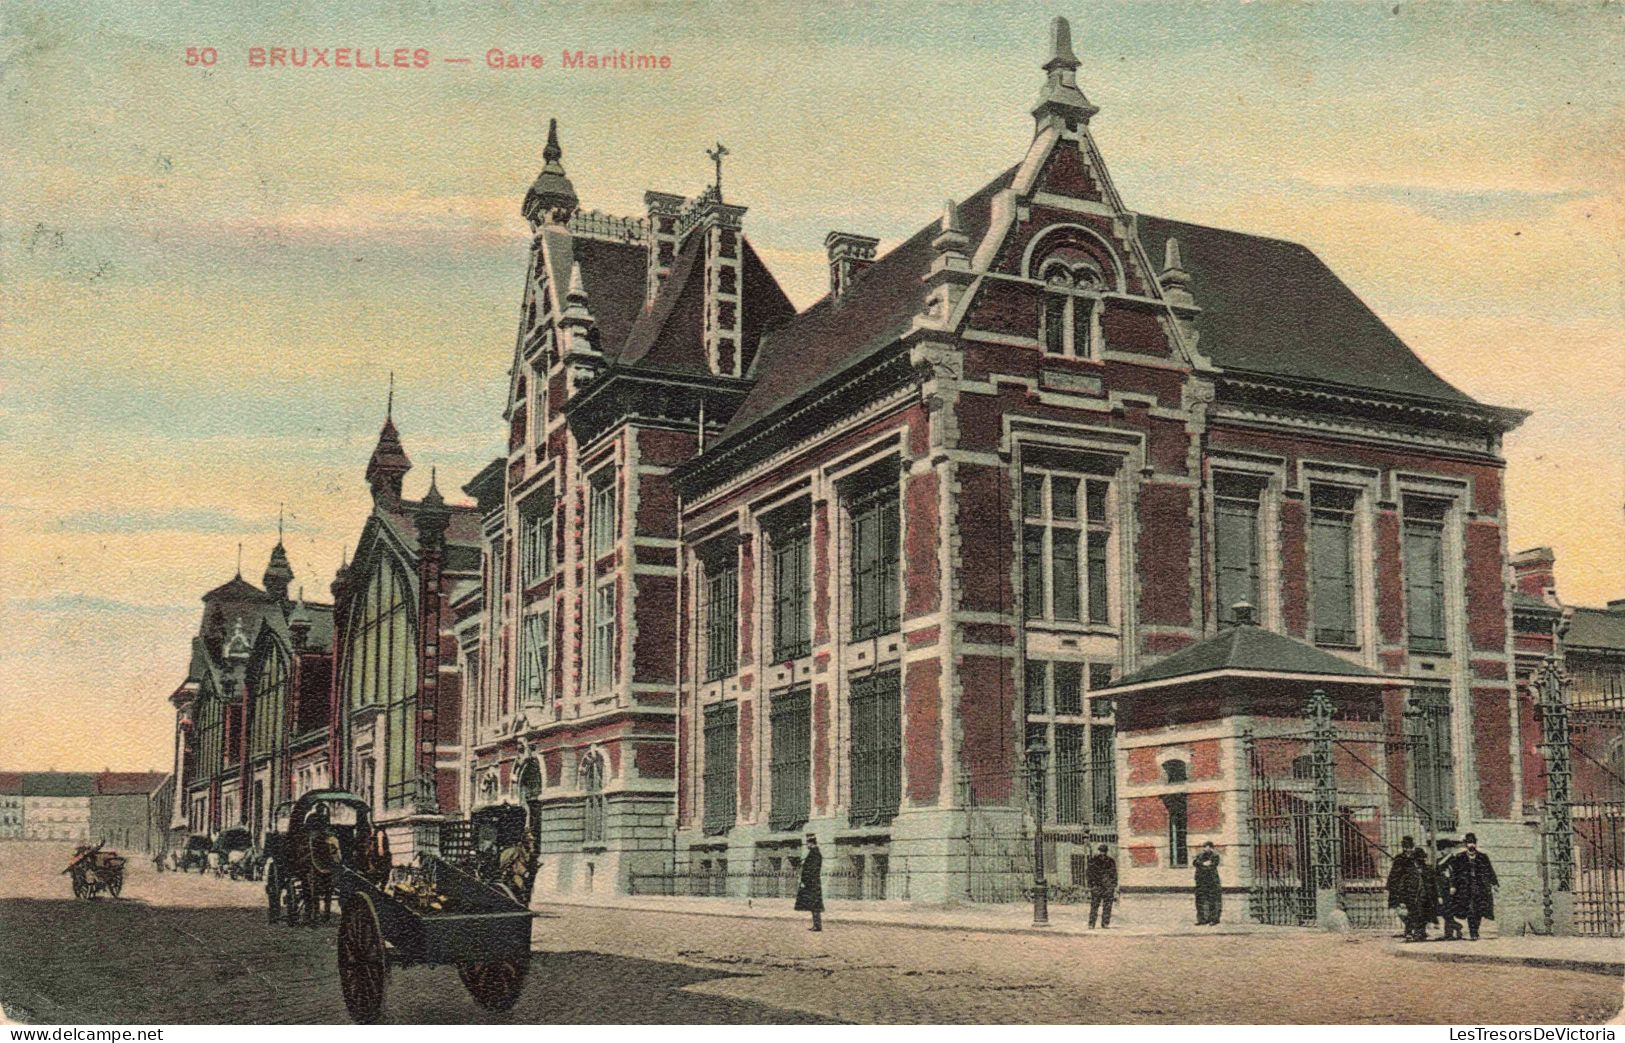 BELGIQUE - Bruxelles - La Gare Maritime - Colorisé - Animé - Carte Postale Ancienne - Piazze